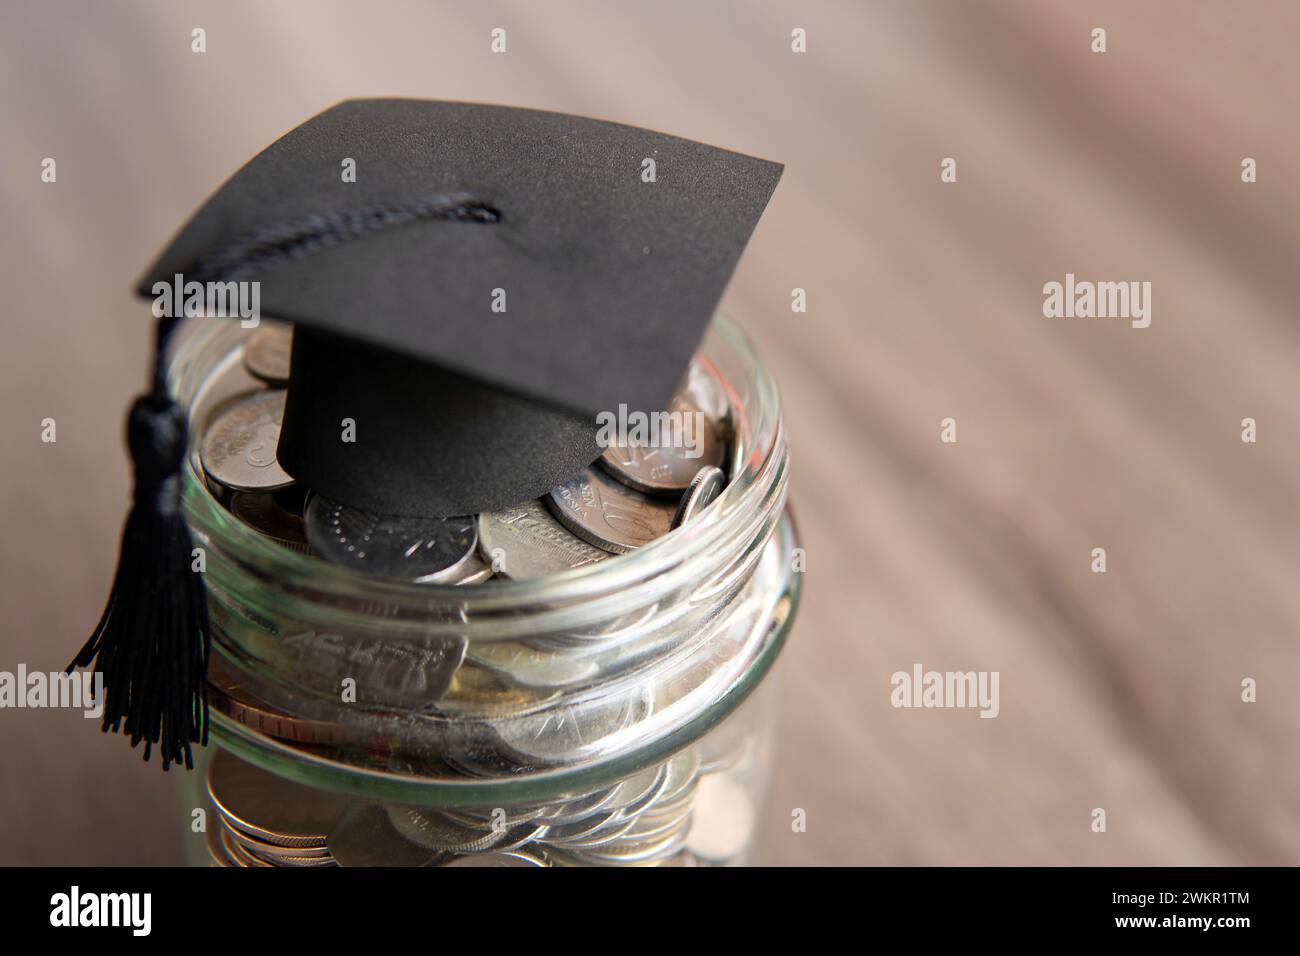 Pot en verre rempli de pièces de monnaie et un bouchon de graduation sur le dessus. Copier l'espace pour le texte. Concept d'épargne-études. Banque D'Images